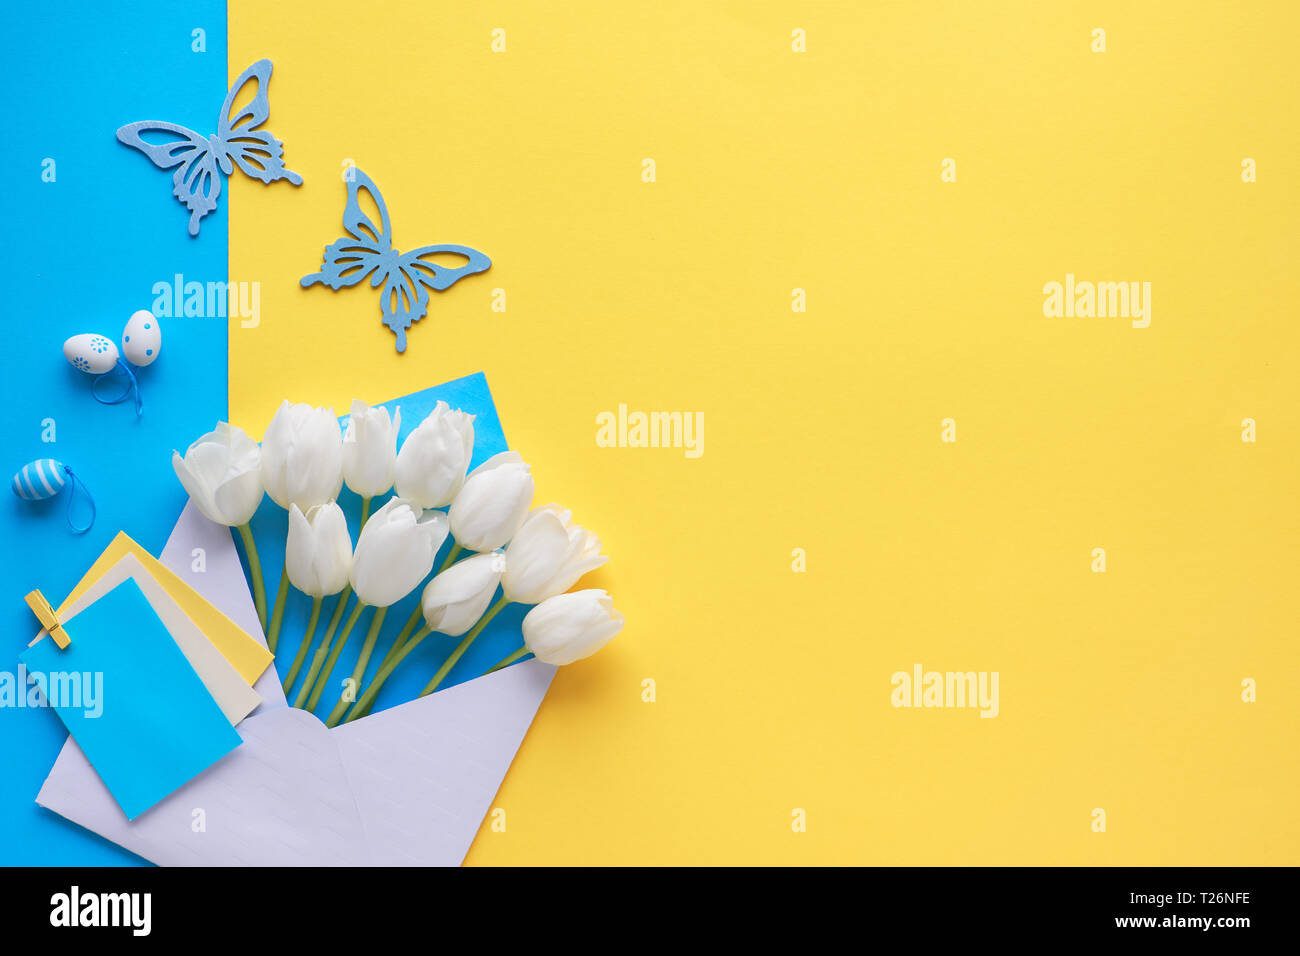 Télévision Pâques réside dans le jaune et bleu. Tulipes blanches dans une enveloppe sur le papier de fond avec des œufs décoratifs et de papillons, copiez-space Banque D'Images